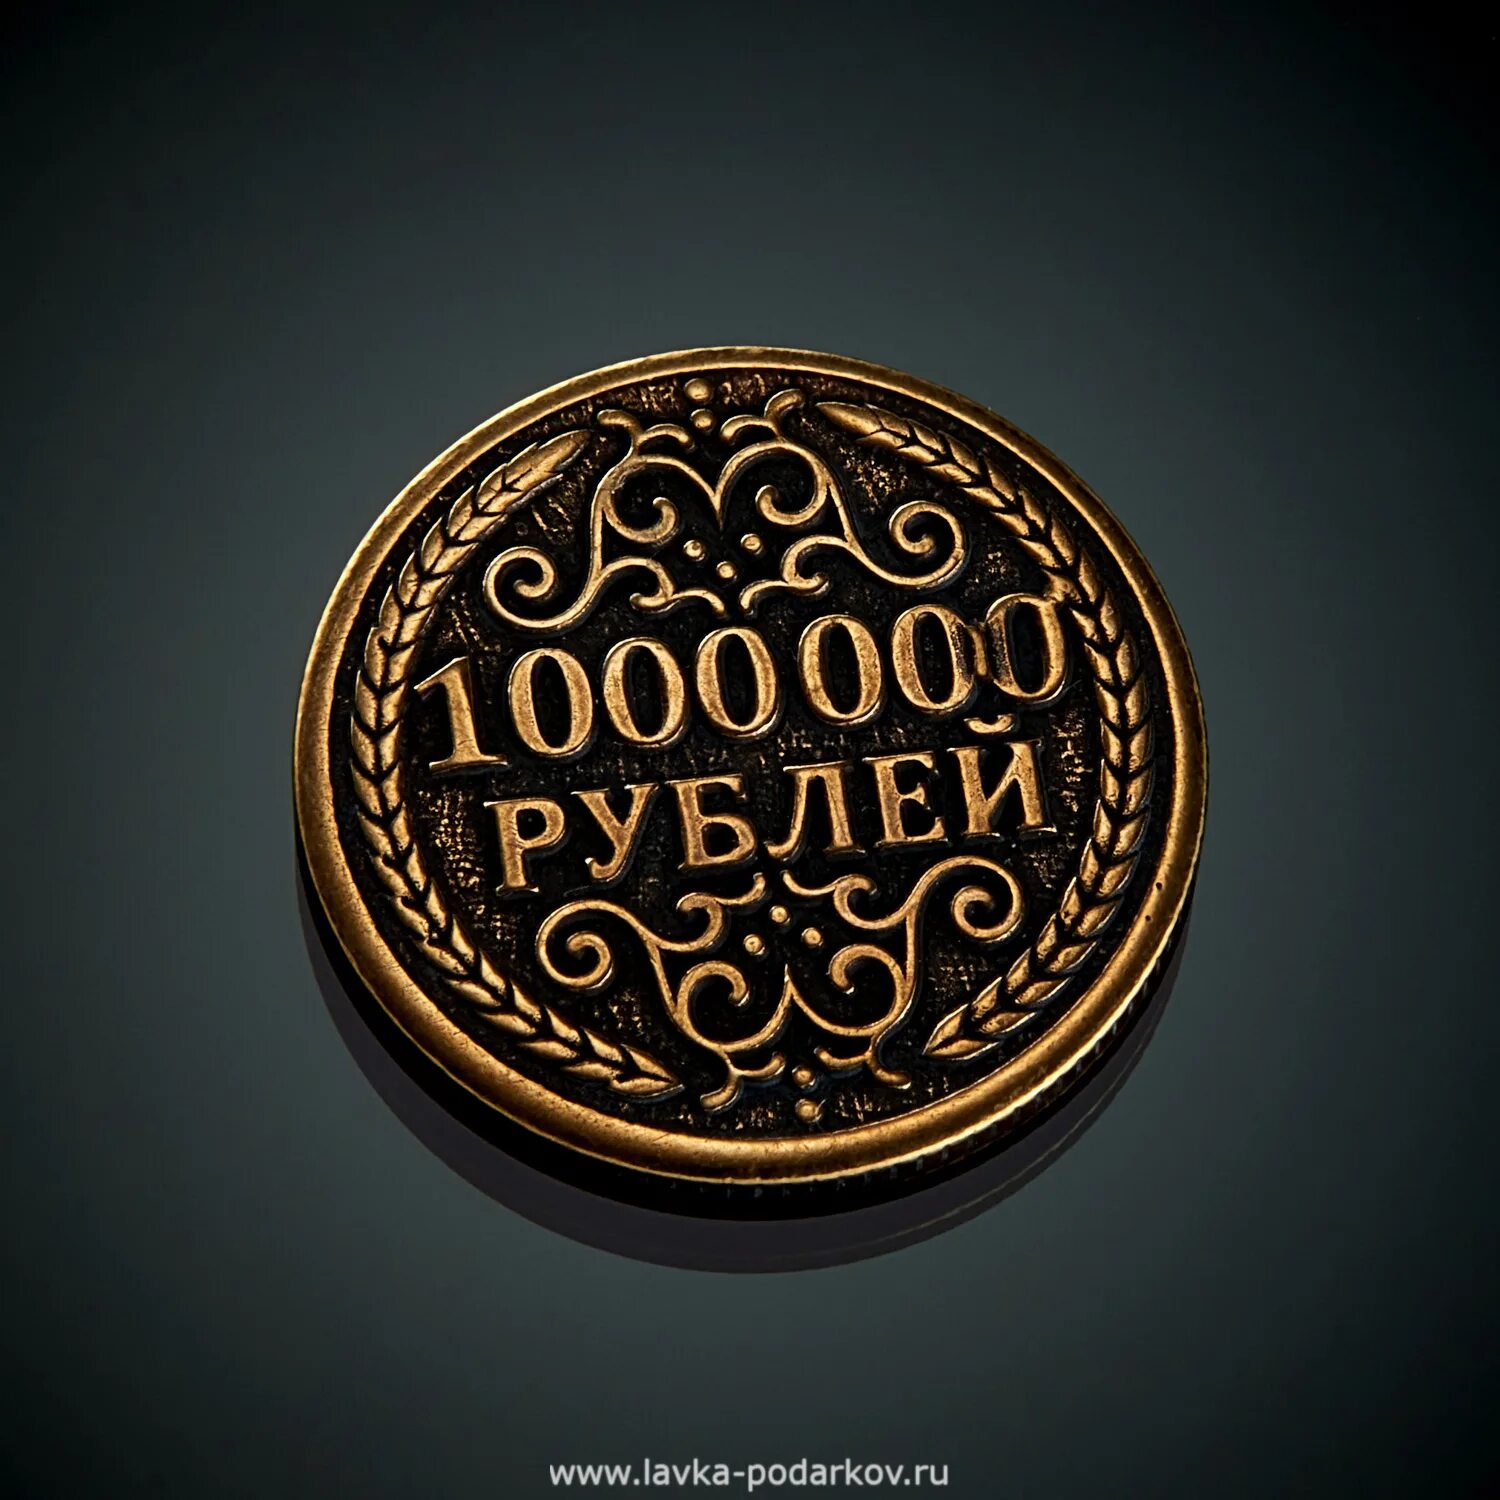 Дам 1 миллион рублей. Монета миллион рублей. Сувенирная монета 1000000 рублей. Железная монета 1000000 рублей. Монета 1 000 000 рублей.